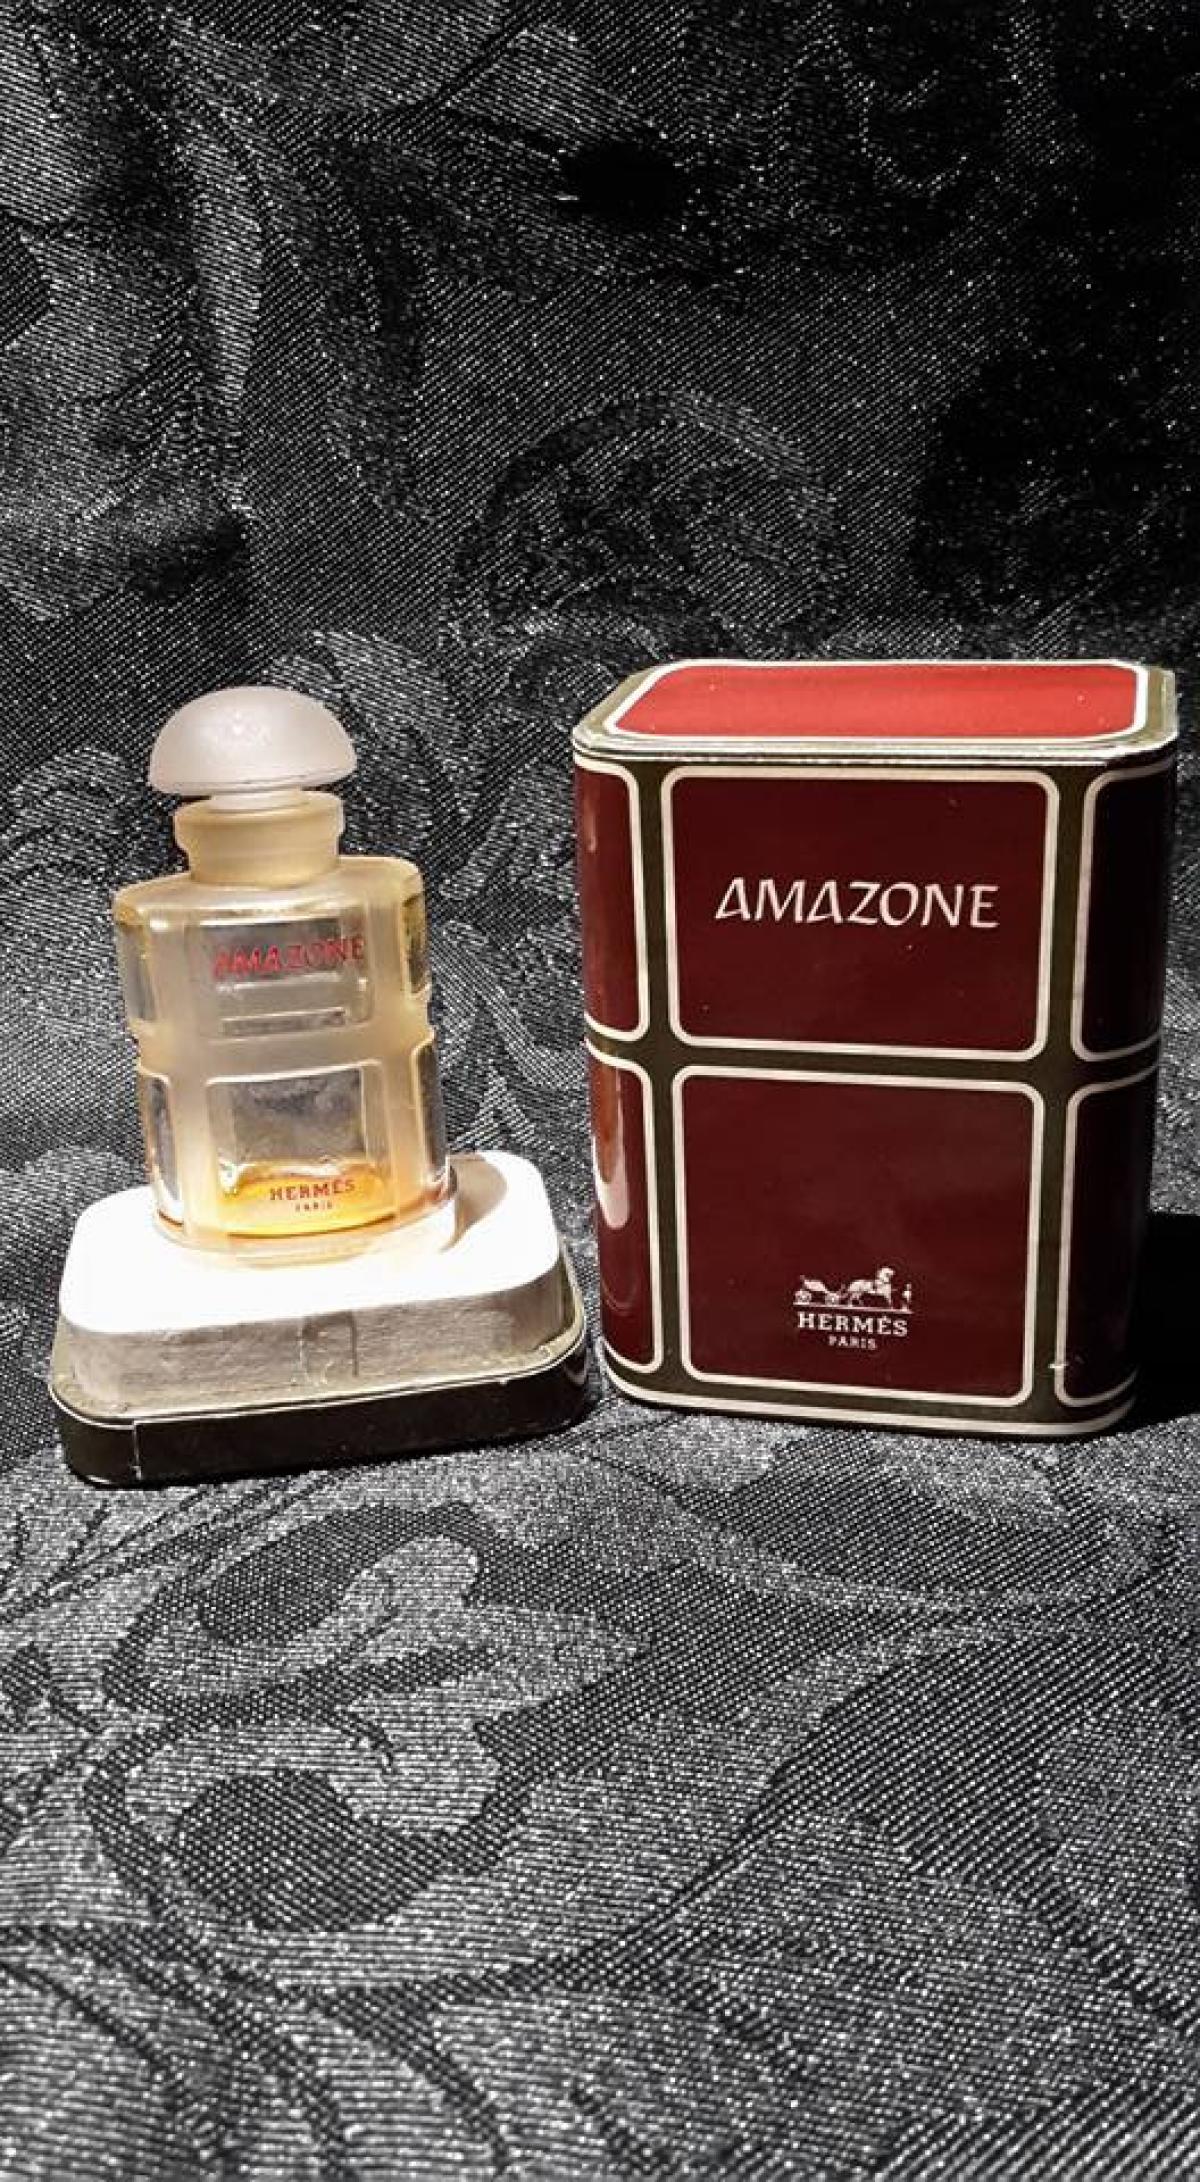 Amazone (1974) Hermès άρωμα - ένα άρωμα για γυναίκες 1974